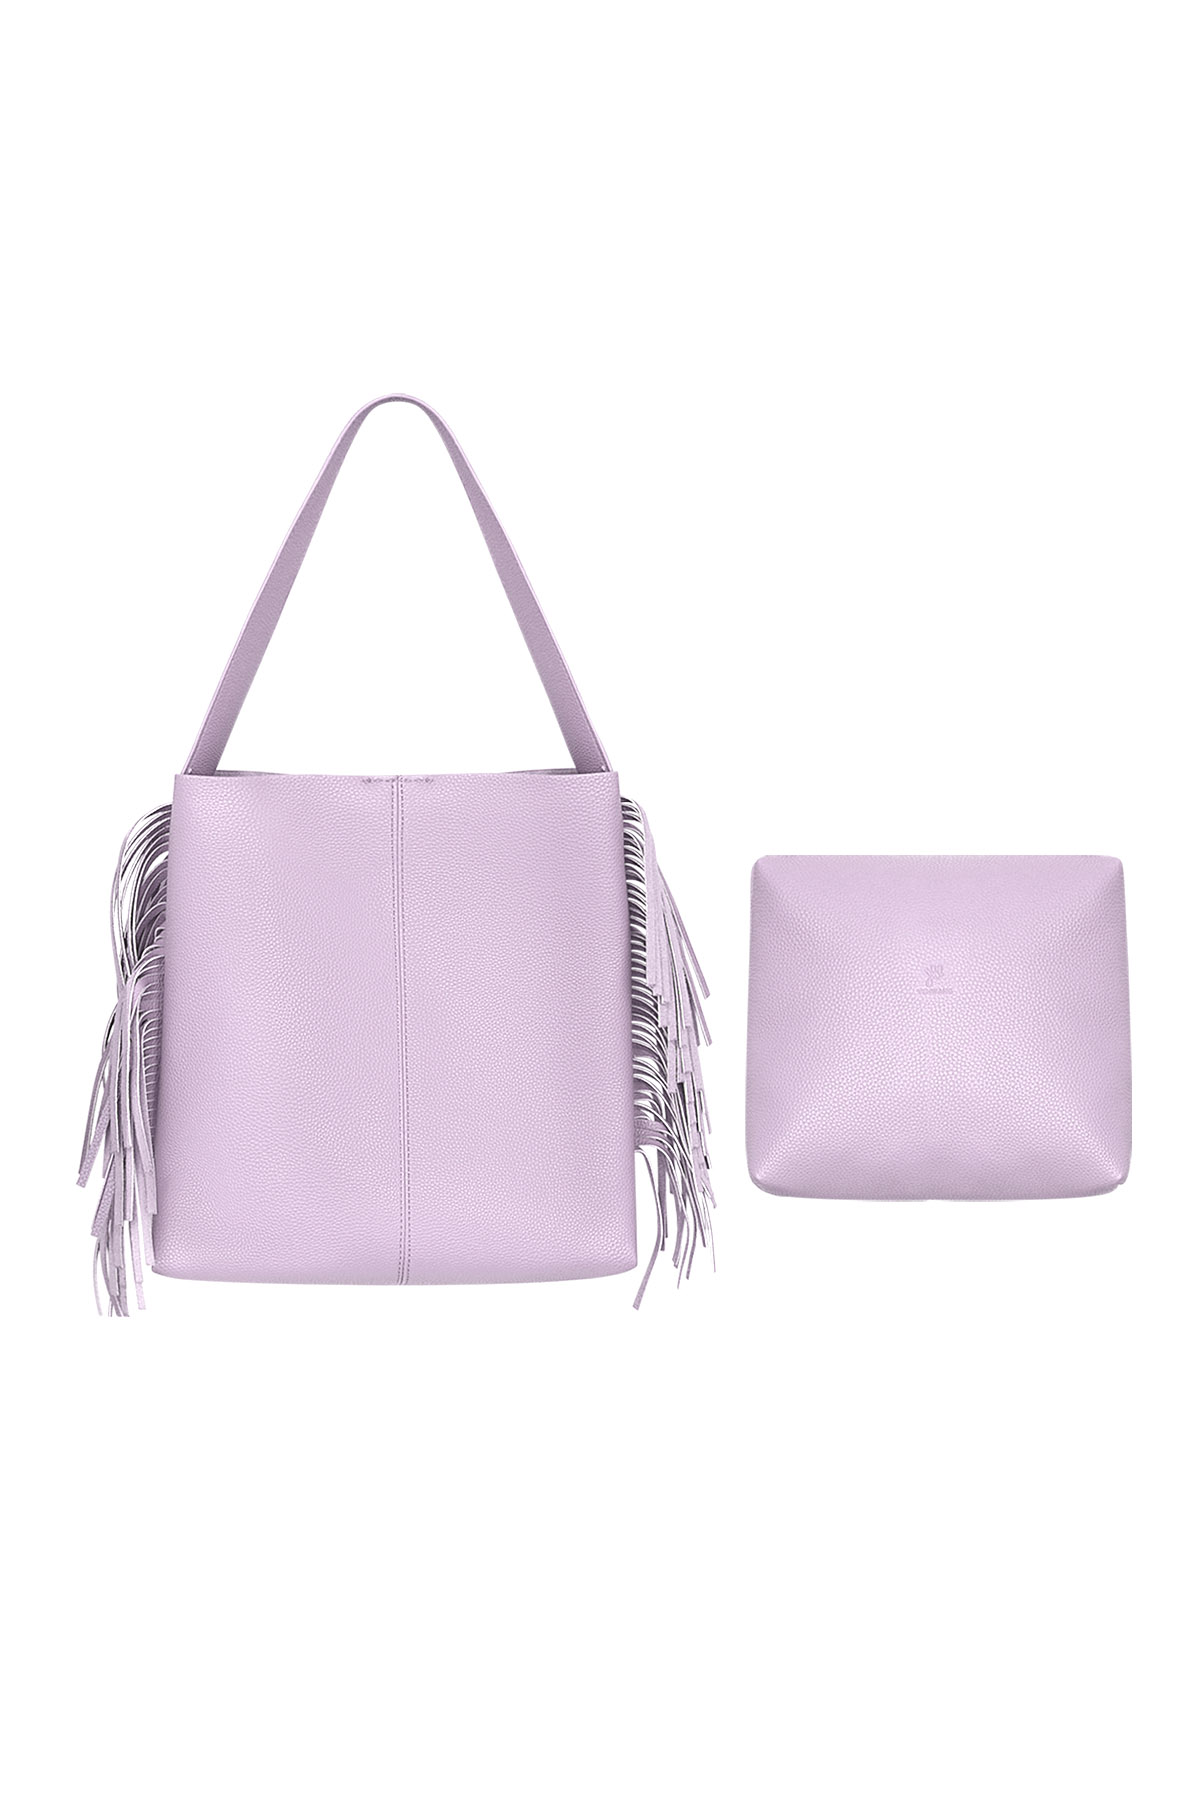 Handbag fringes - purple PU 